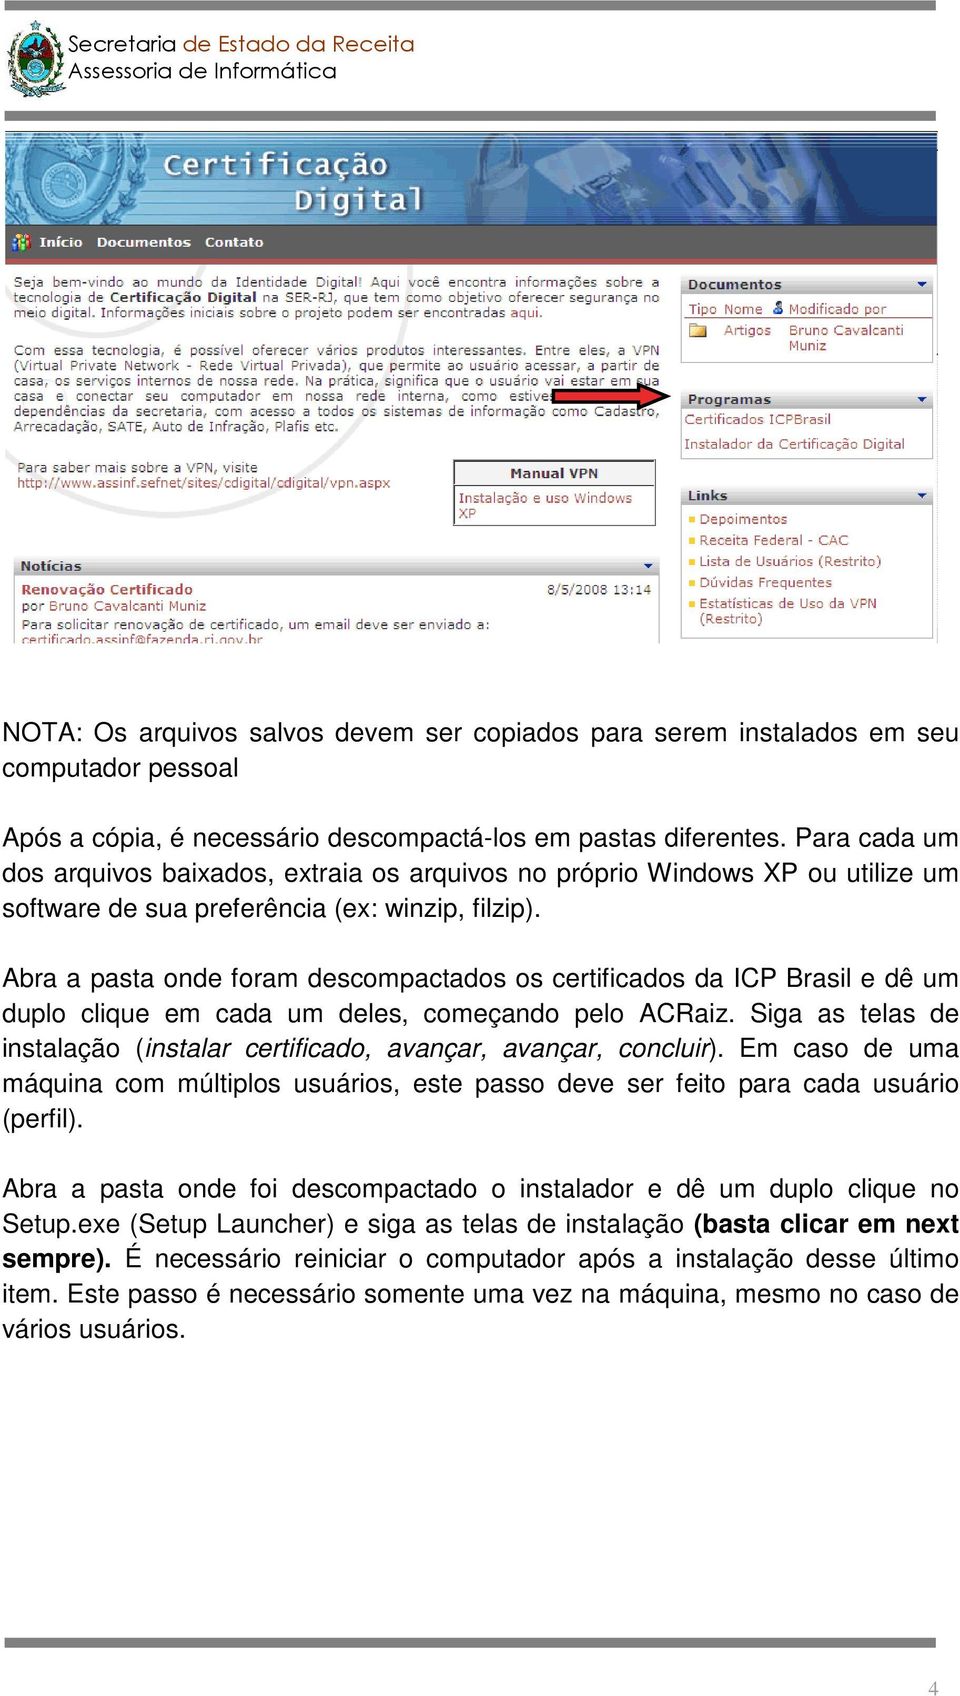 Abra a pasta onde foram descompactados os certificados da ICP Brasil e dê um duplo clique em cada um deles, começando pelo ACRaiz.